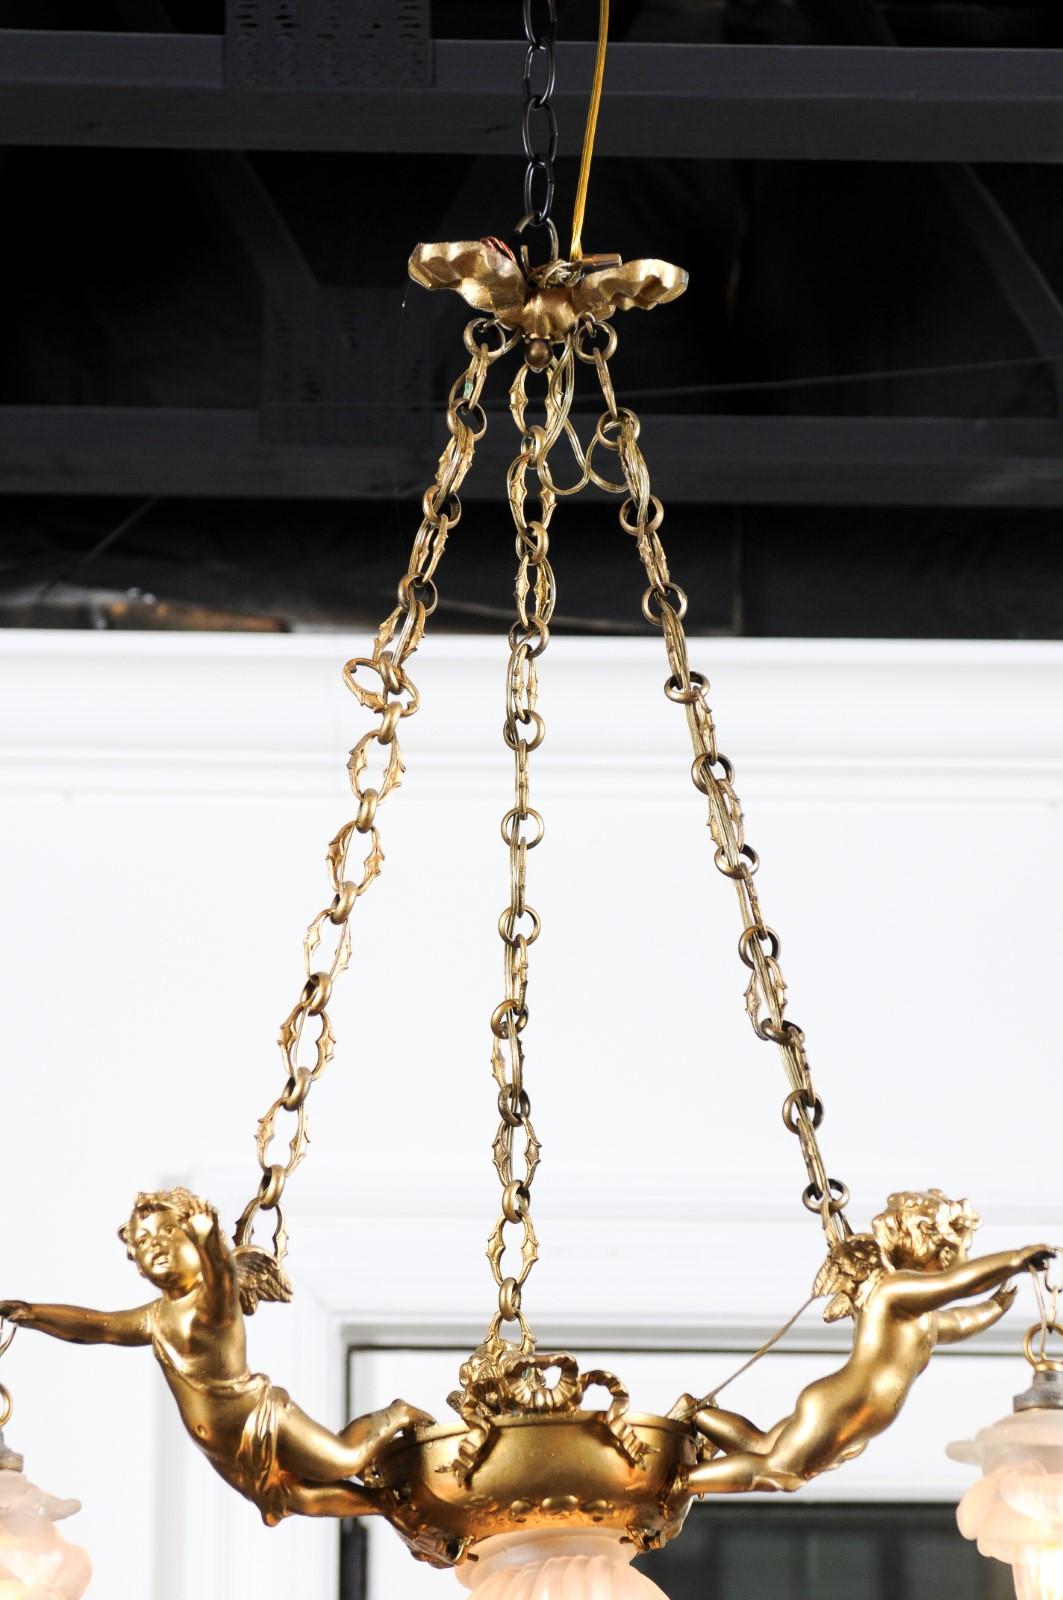 Lustre français à trois lumières en métal doré du 19e siècle, avec des rubans et des chérubins retenant les abat-jour. Né en France au XIXe siècle, ce lustre à trois lumières présente un baldaquin à ruban, supportant des maillons profilés. La